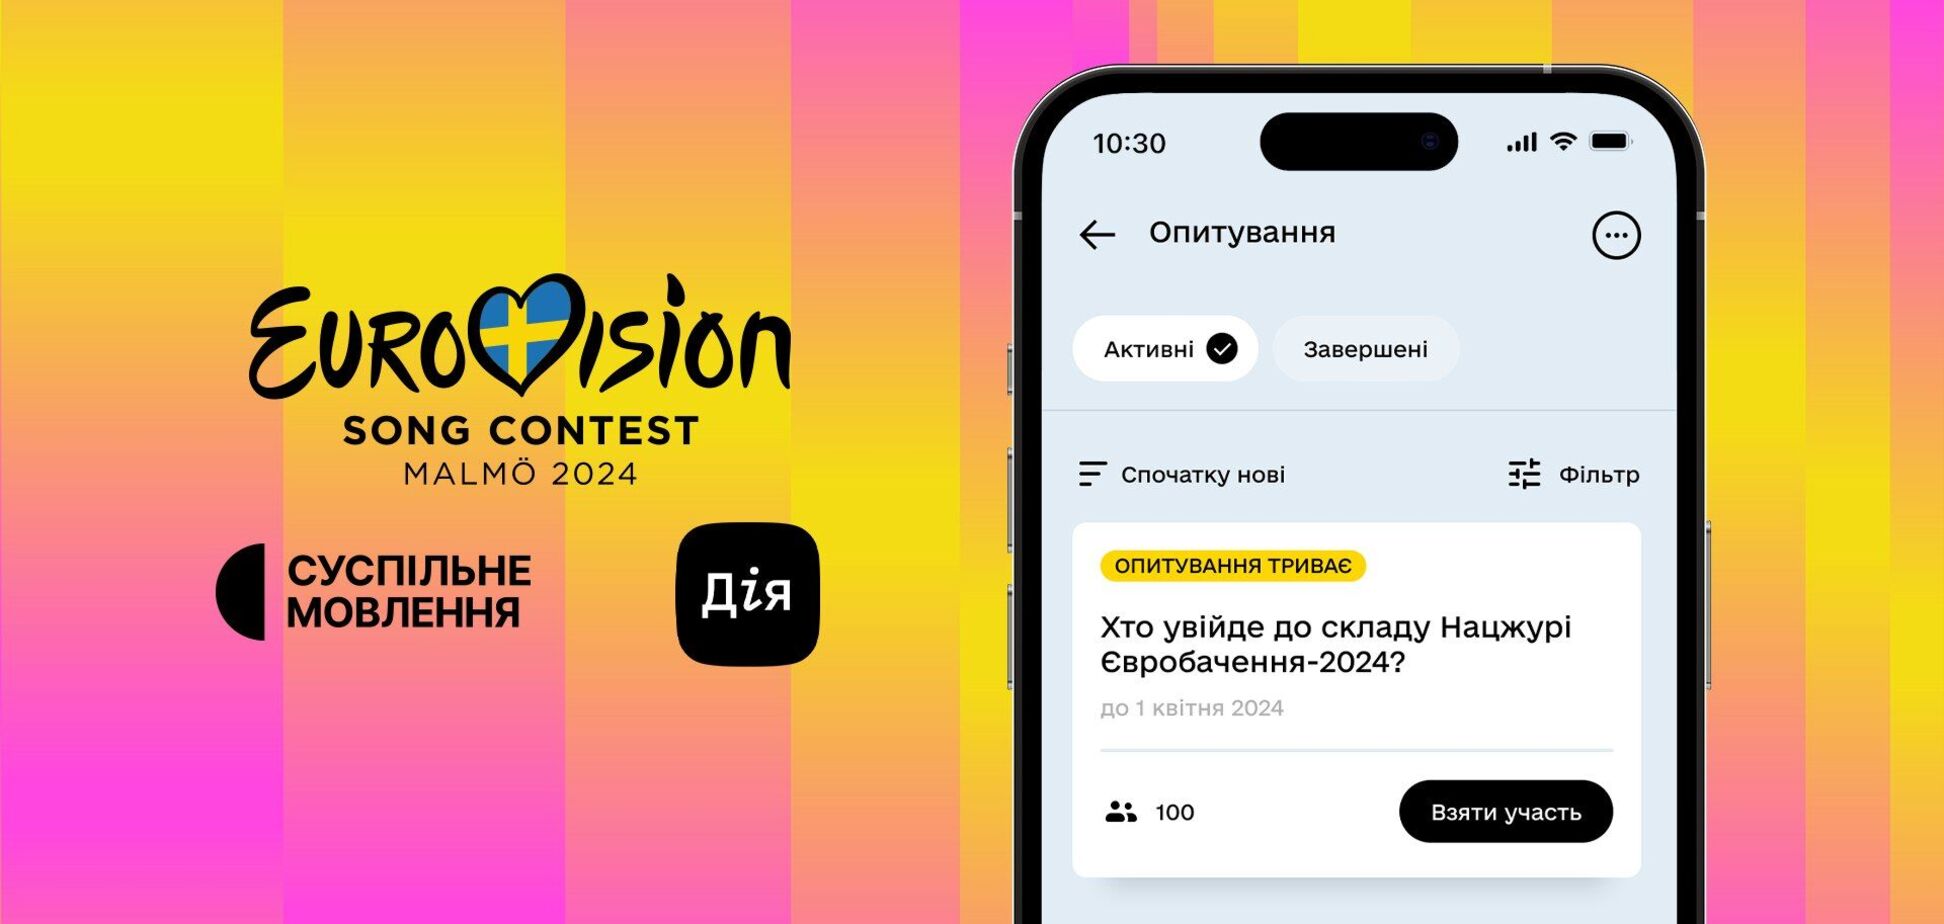 Украинцы смогут выбрать состав Национального жюри на Евровидение 2024. Как проголосовать в 'Дії'